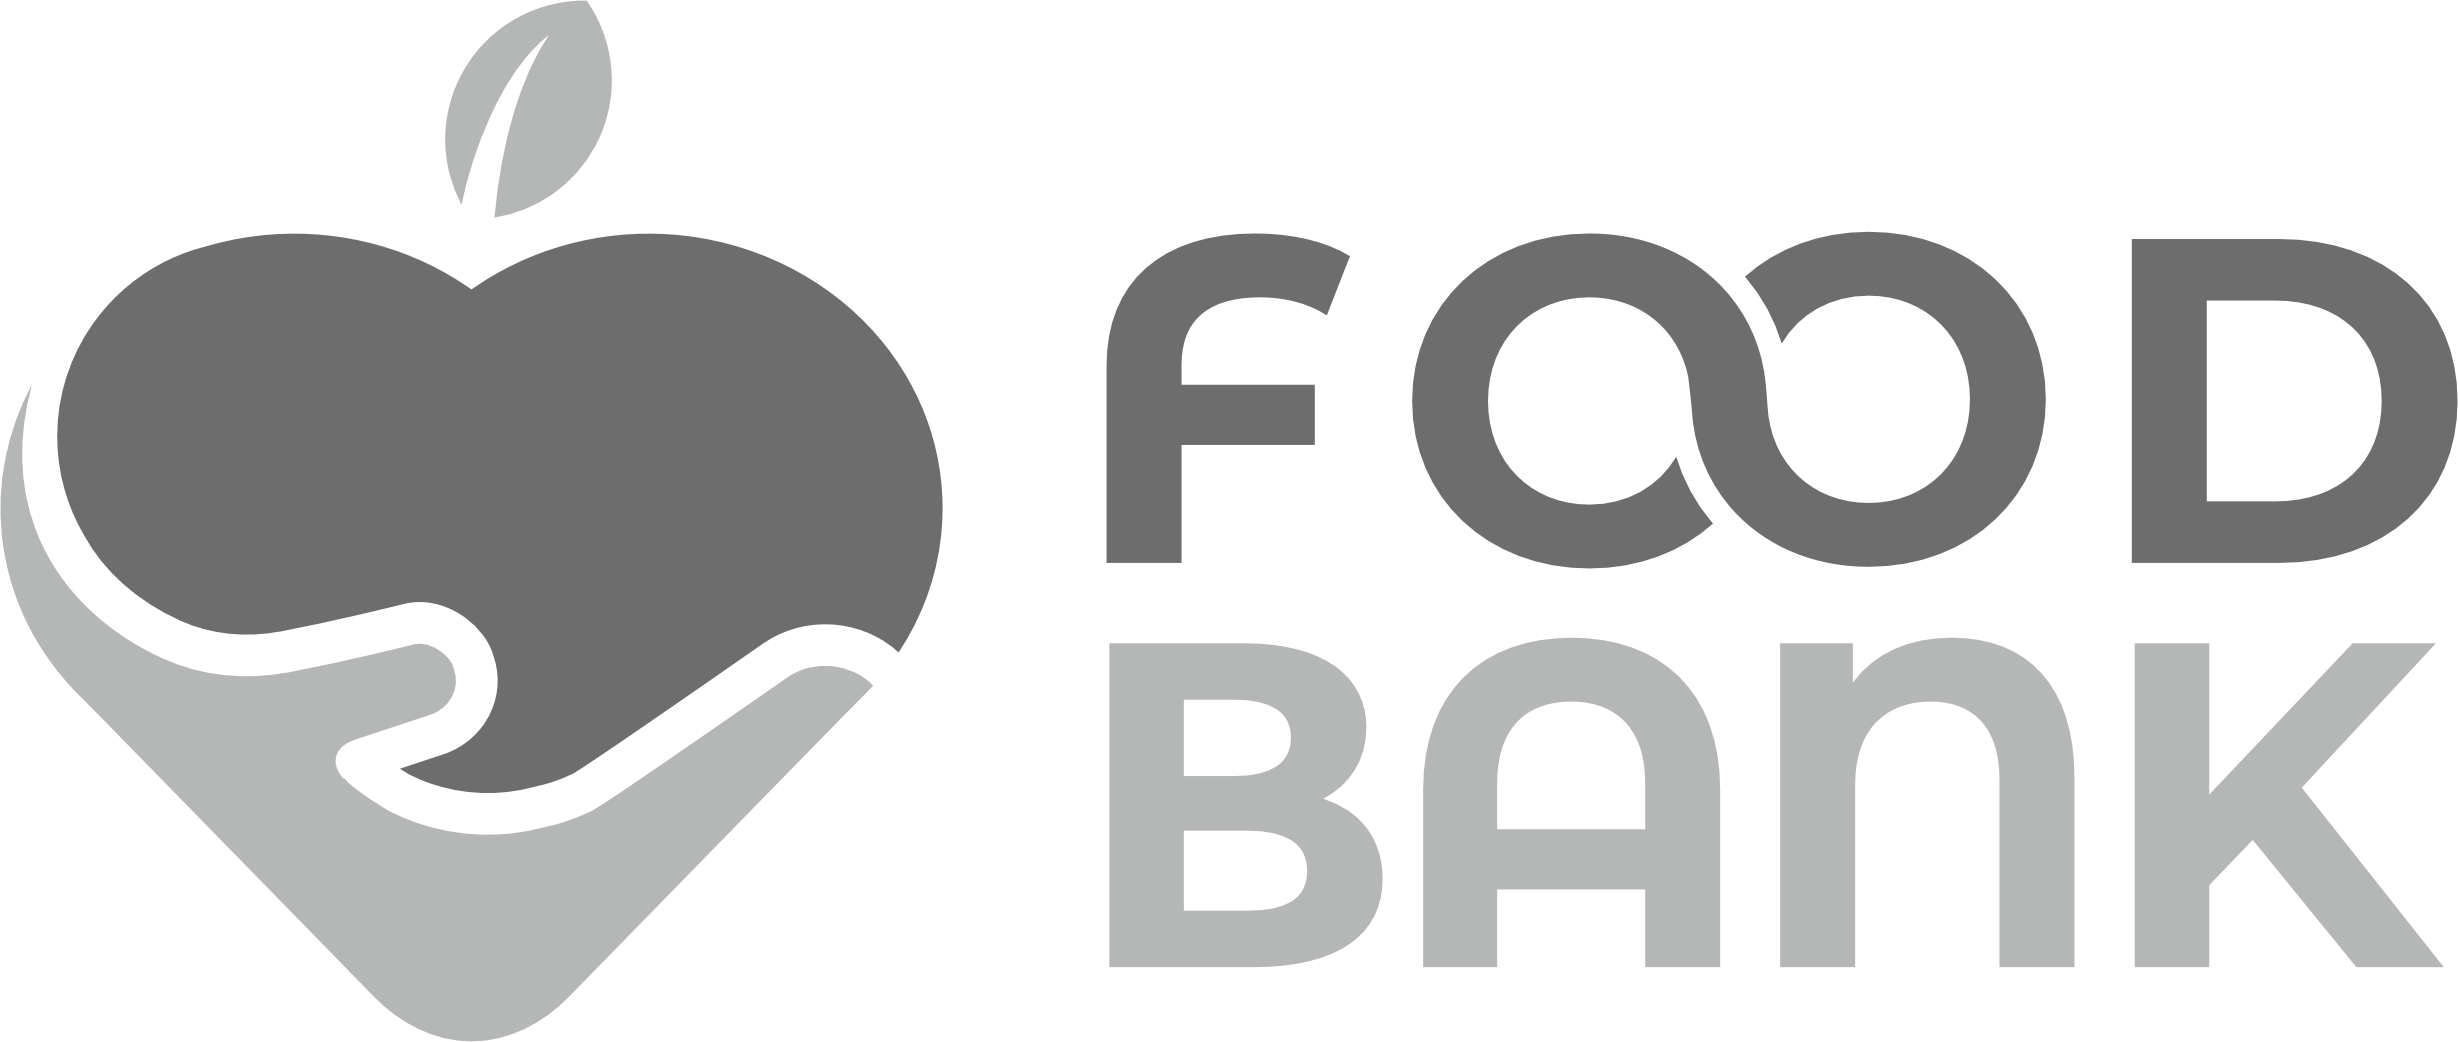 Foodbank